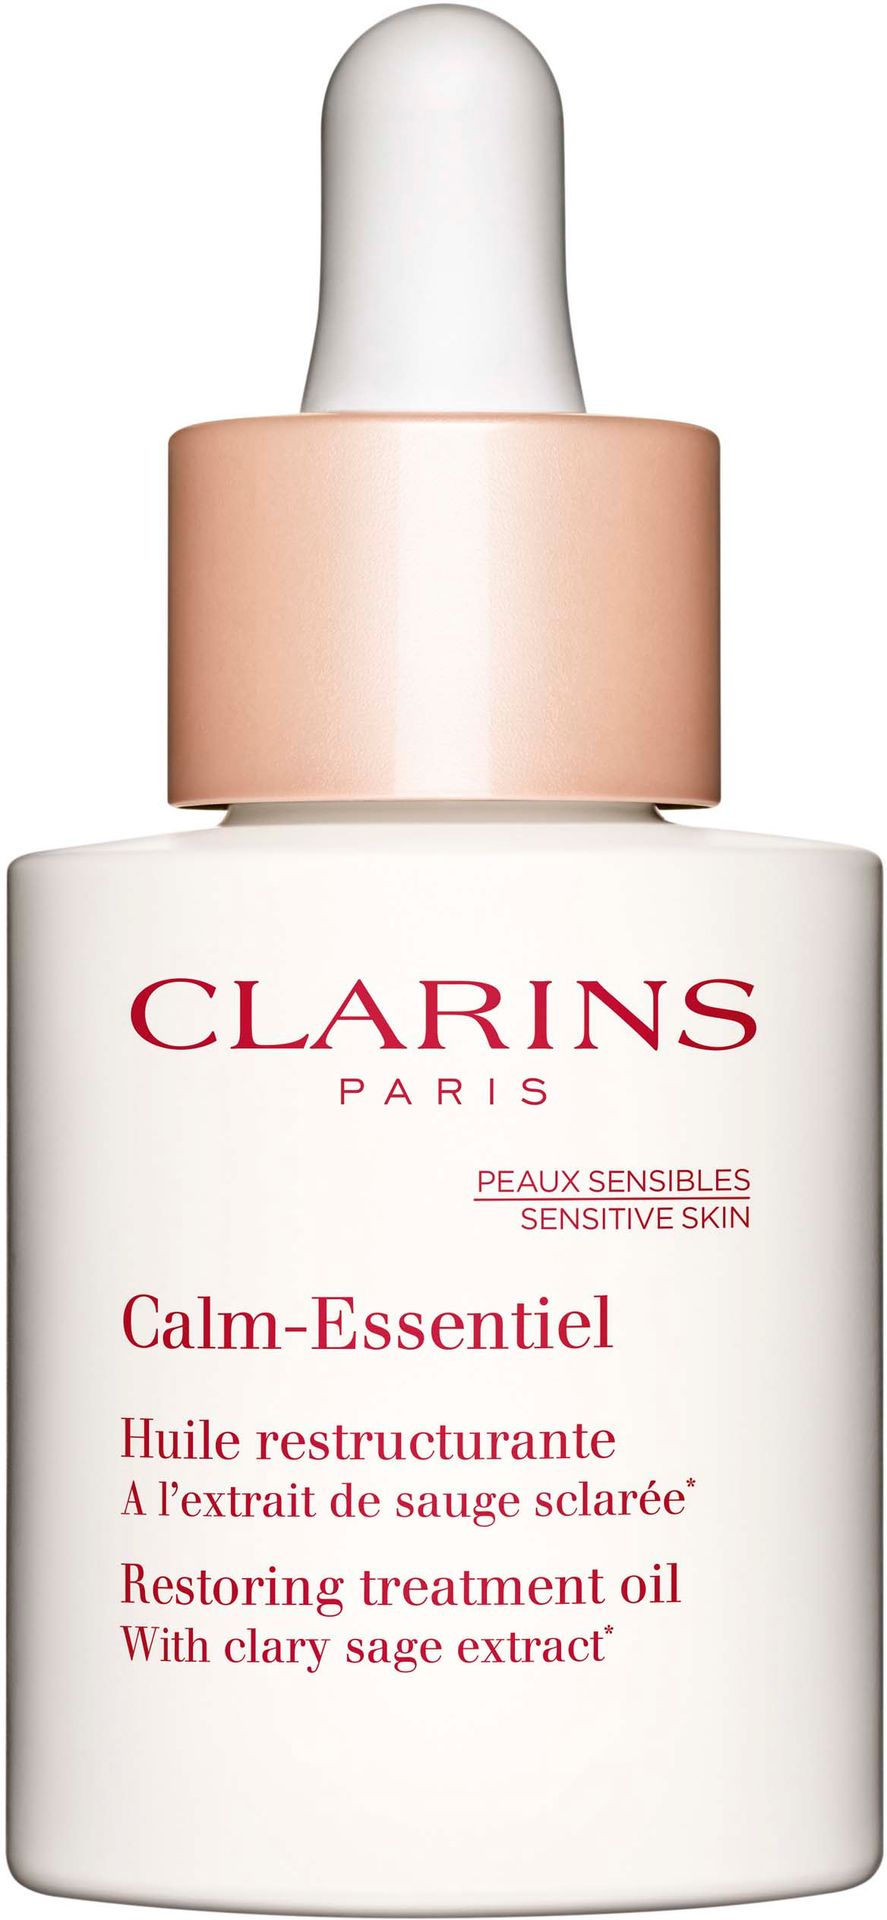 Clarins Calm Essentiel kojący olejek do skóry wrażliwej Restoring Treatment Oil) 30 ml